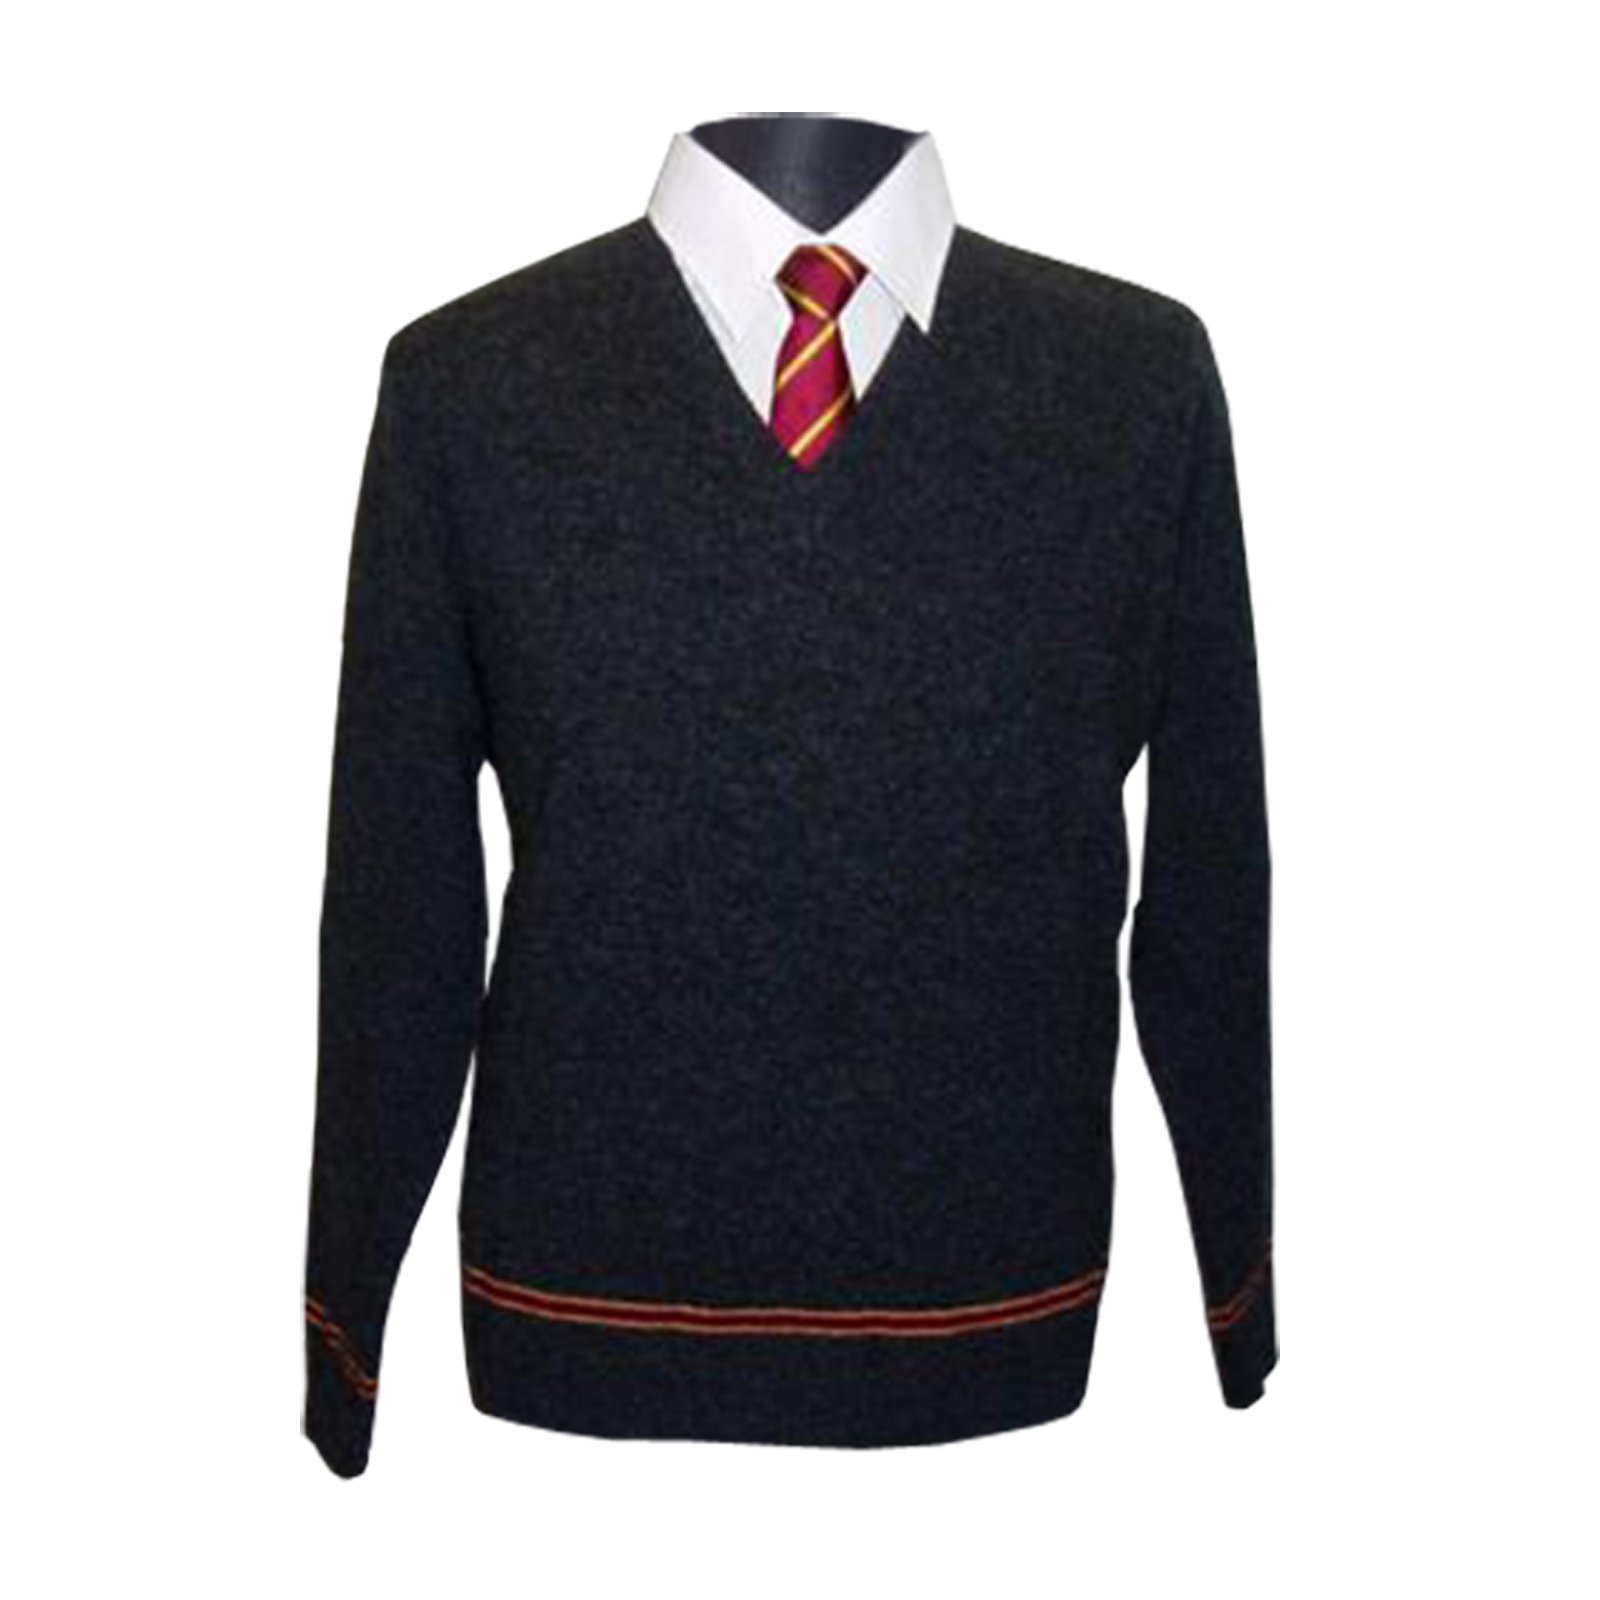 HARRY POTTER Gryffindor Sweater Hogwarts Uniform Pullover vom Filmausstatter made in Schottland 100% Lammwolle, Schwarz, L